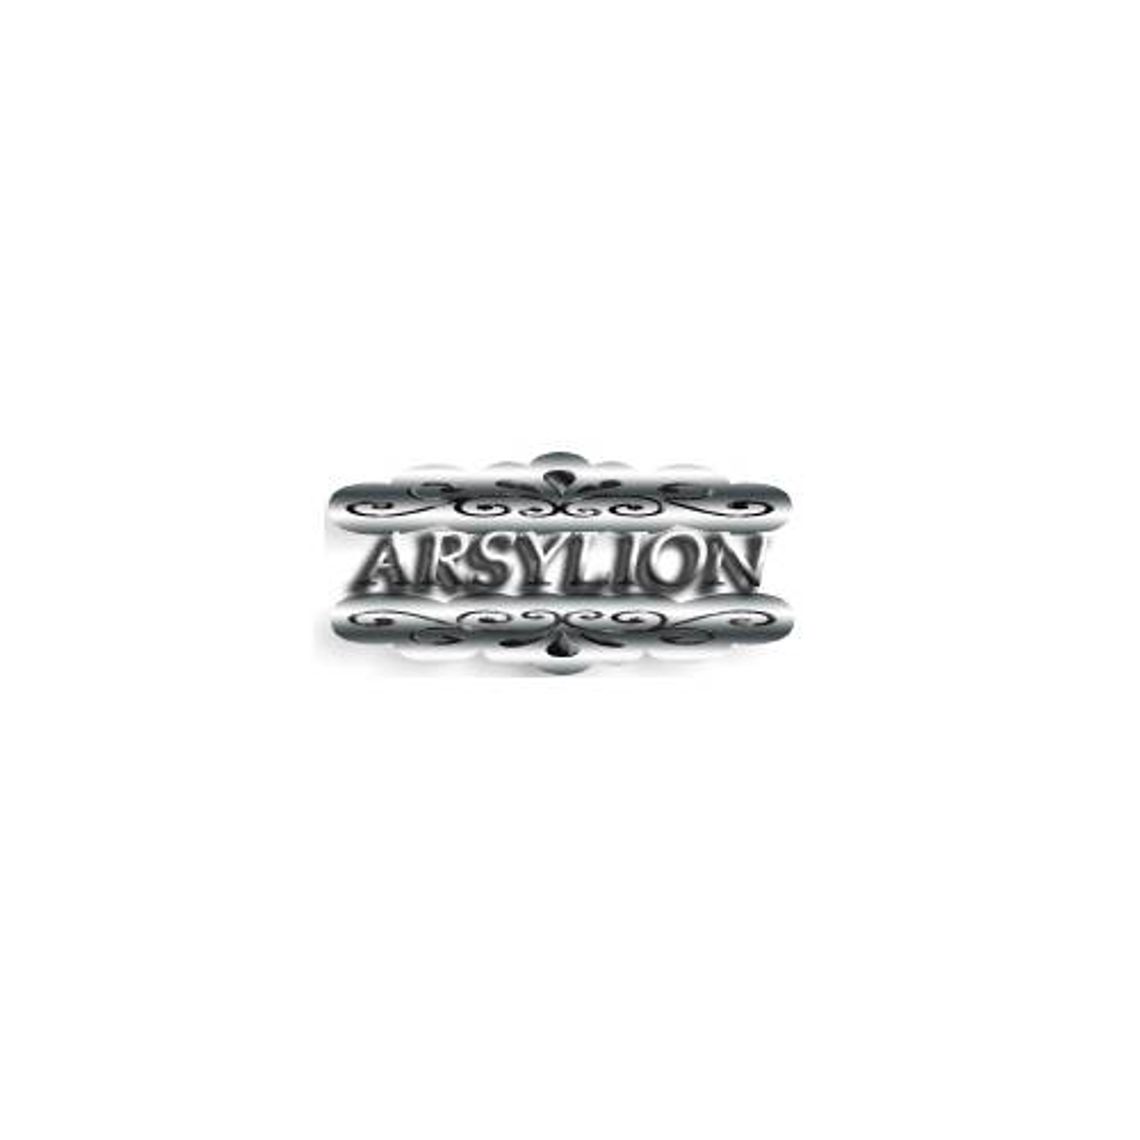 Arsylion - sklep internetowy z wyjątkową biżuterią